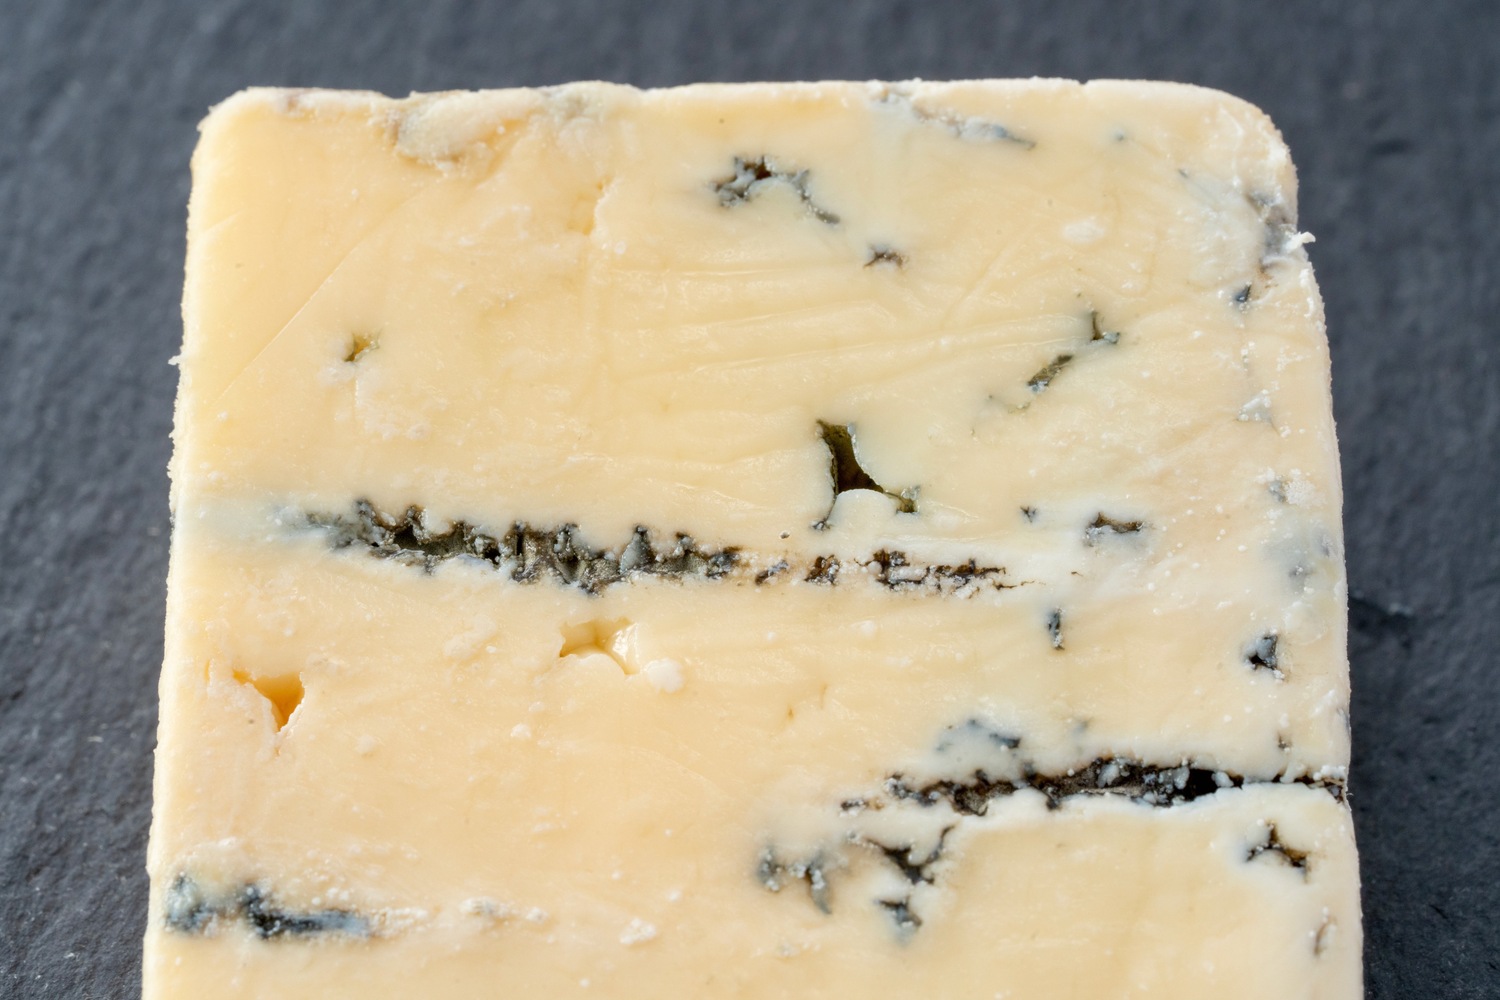 青カビチーズ、さらべつチーズ工房の気まぐれブルー